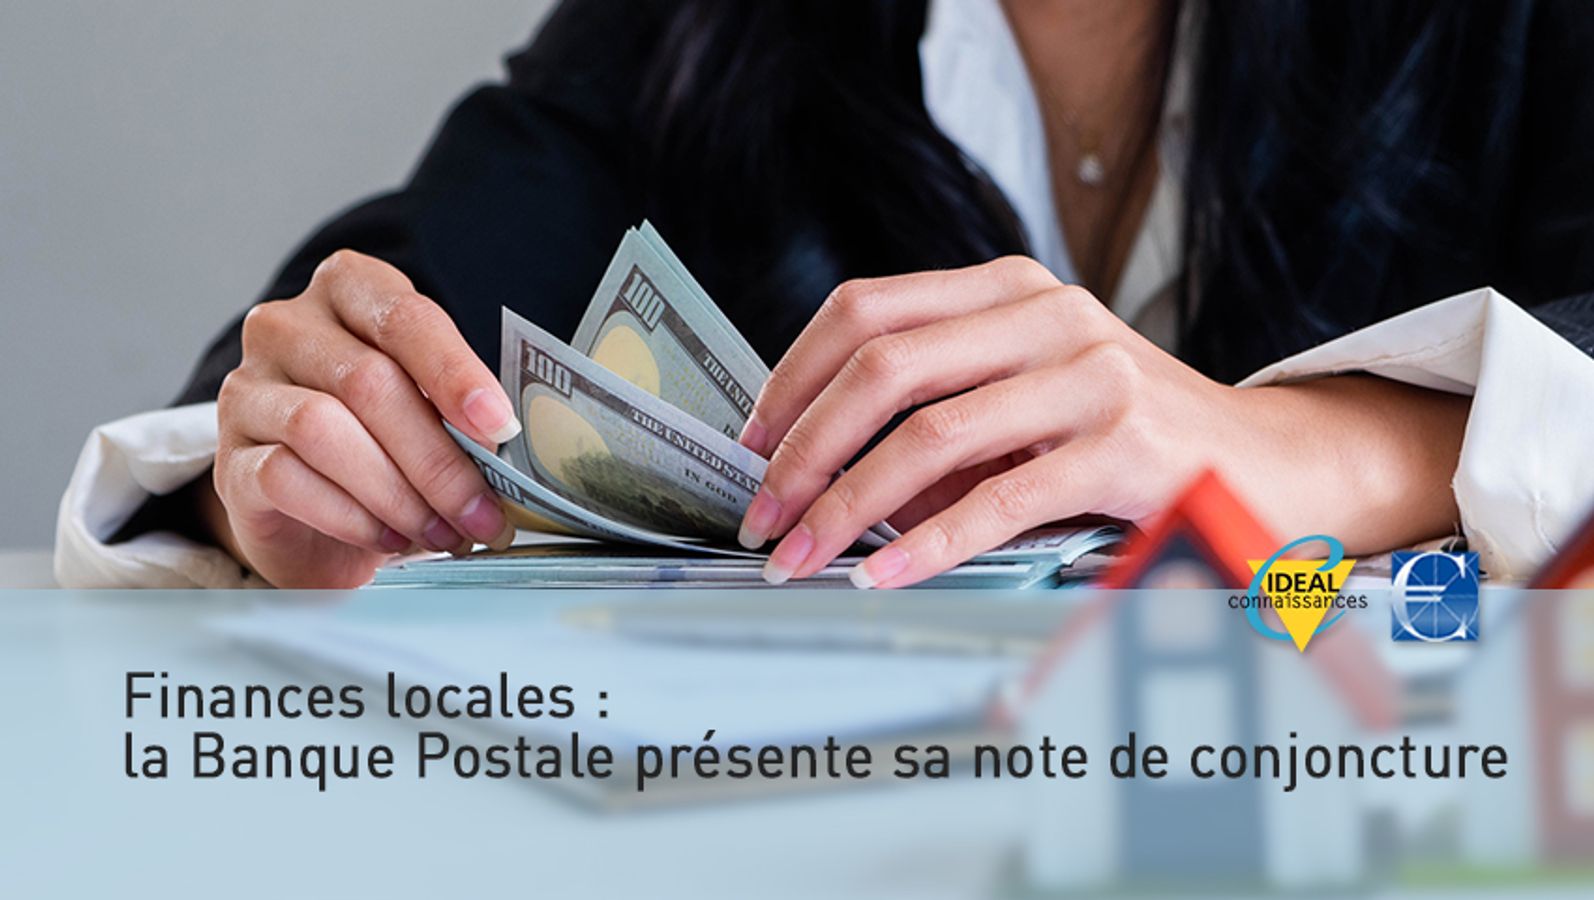 Finances locales : la Banque Postale présente sa note de conjoncture